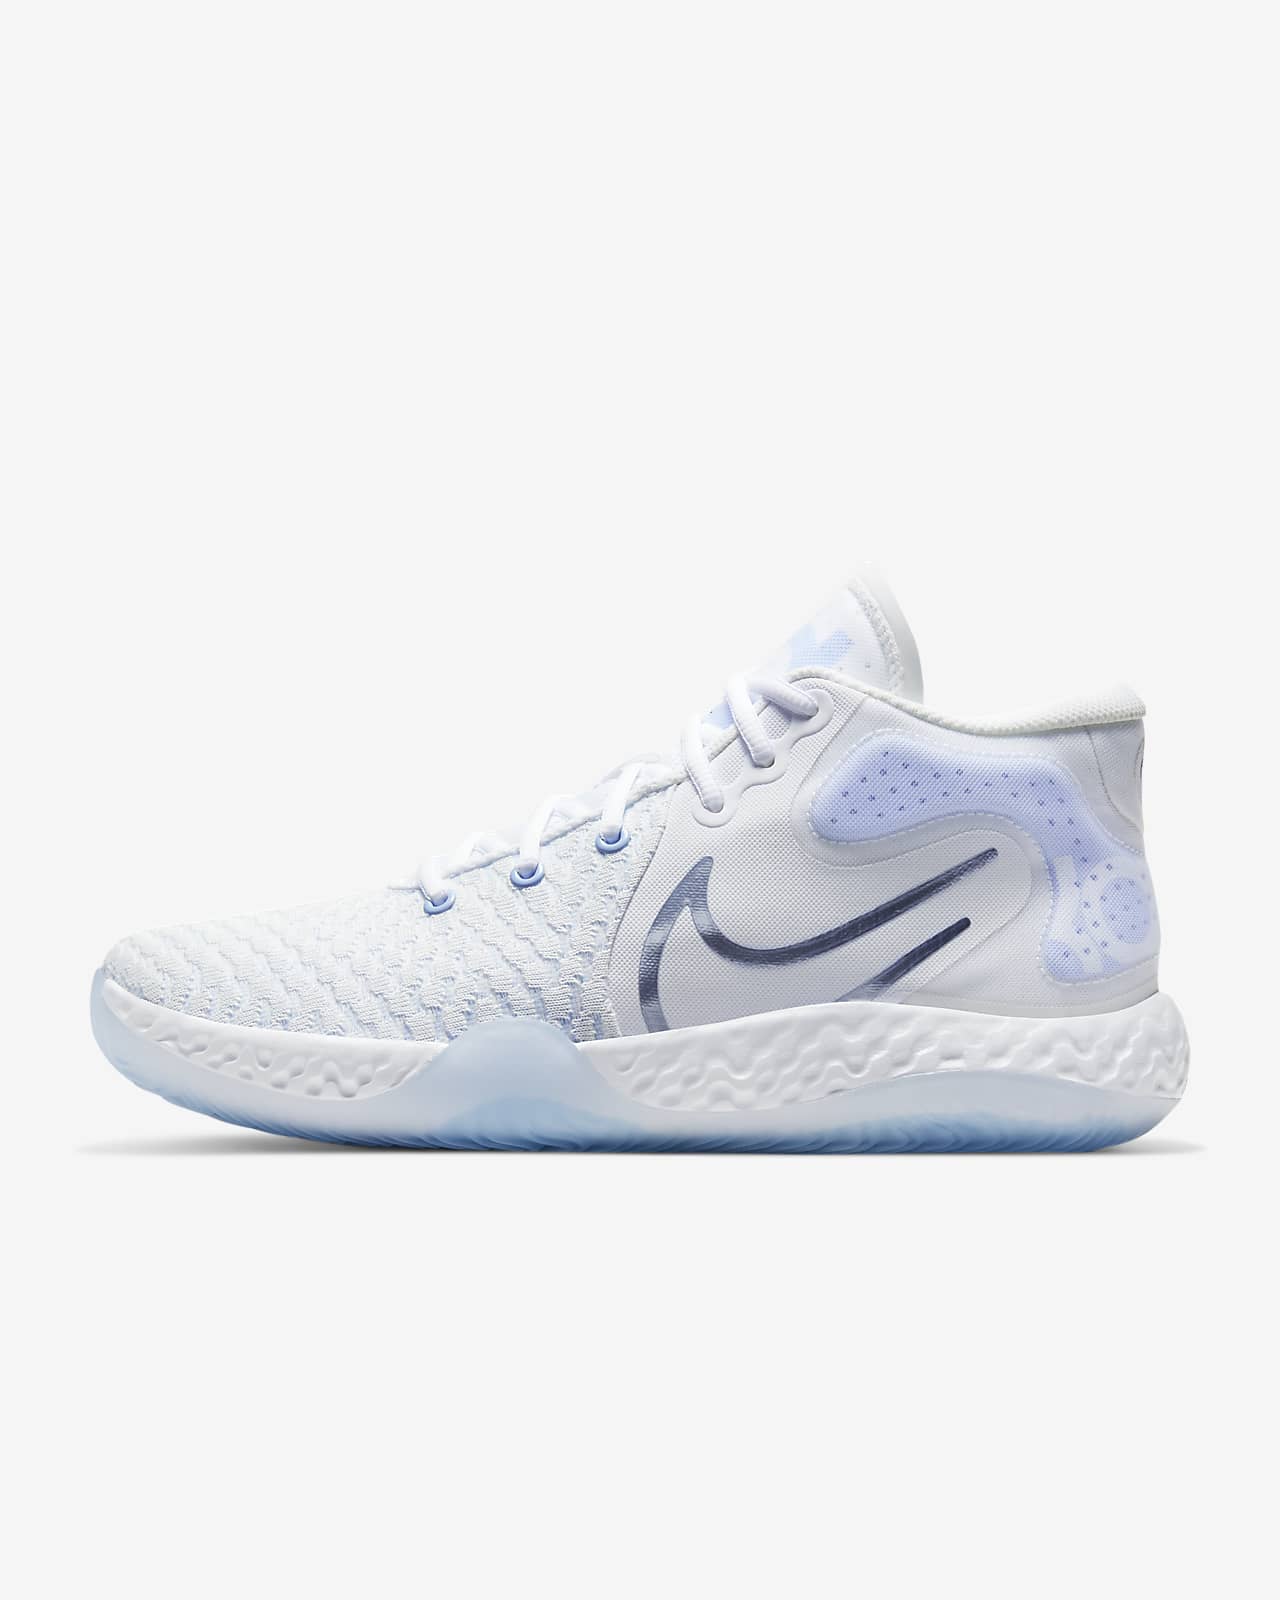 KD Trey 5 VIII Basketball Shoe. Nike AE